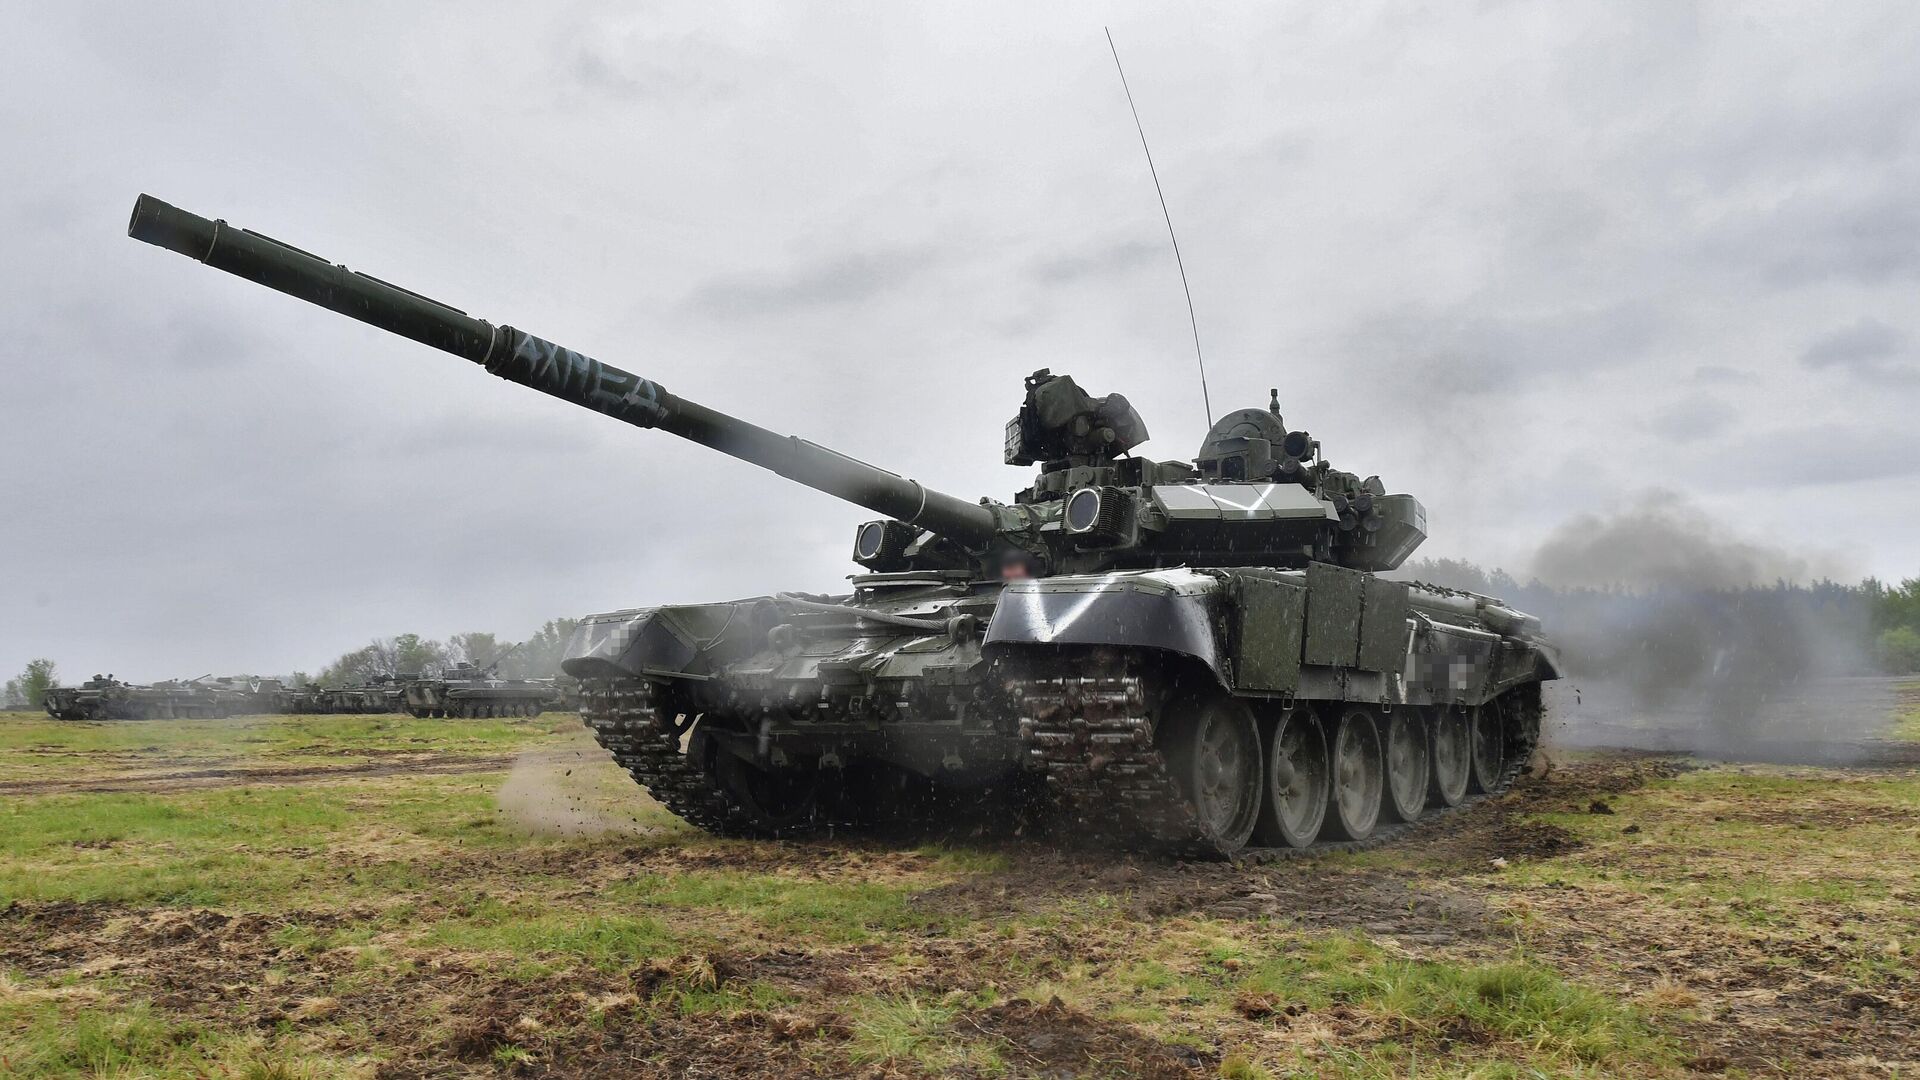 T-90M: Hãy đến với chúng tôi để khám phá chiếc xe tăng T-90M huyền thoại của Nga và tìm hiểu về những tính năng nổi bật của nó. Đây là một trong những chiếc xe tăng hiện đại và mạnh nhất trên thế giới. Hãy xem hình ảnh để cảm nhận sức mạnh của nó.